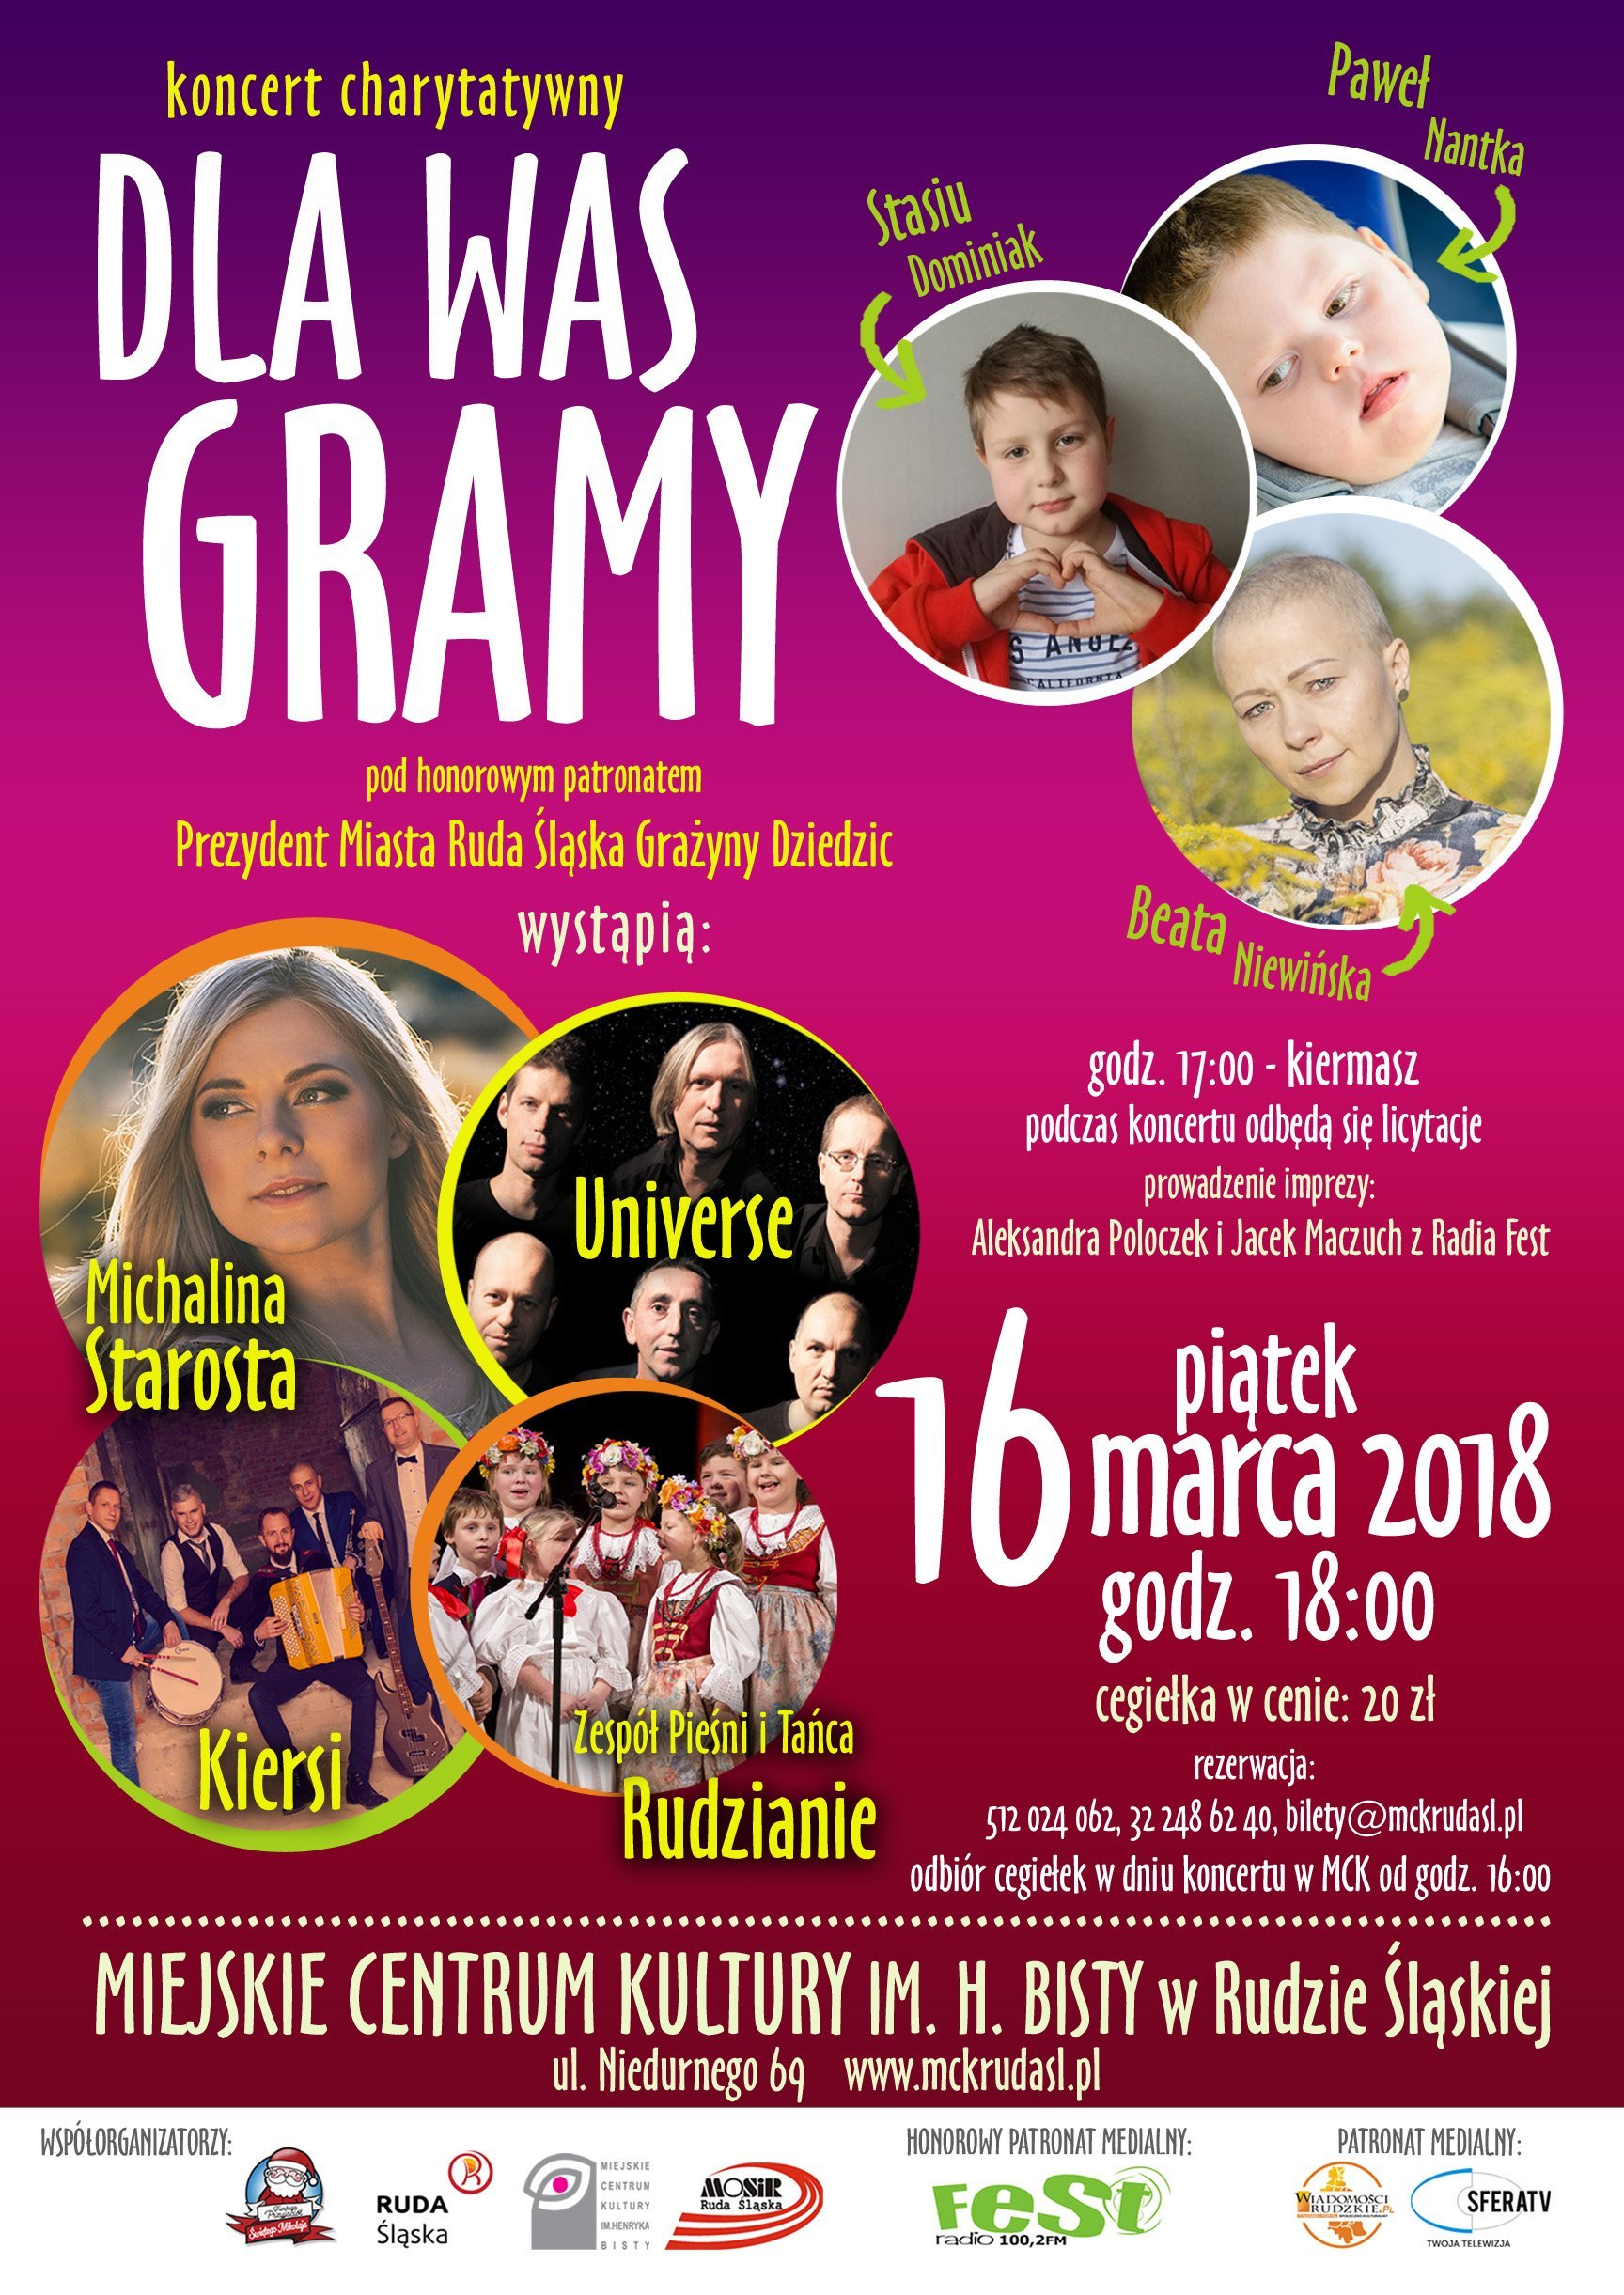 Koncert Charytatywny Dla Was gramy w MCK - Ruda Śląska